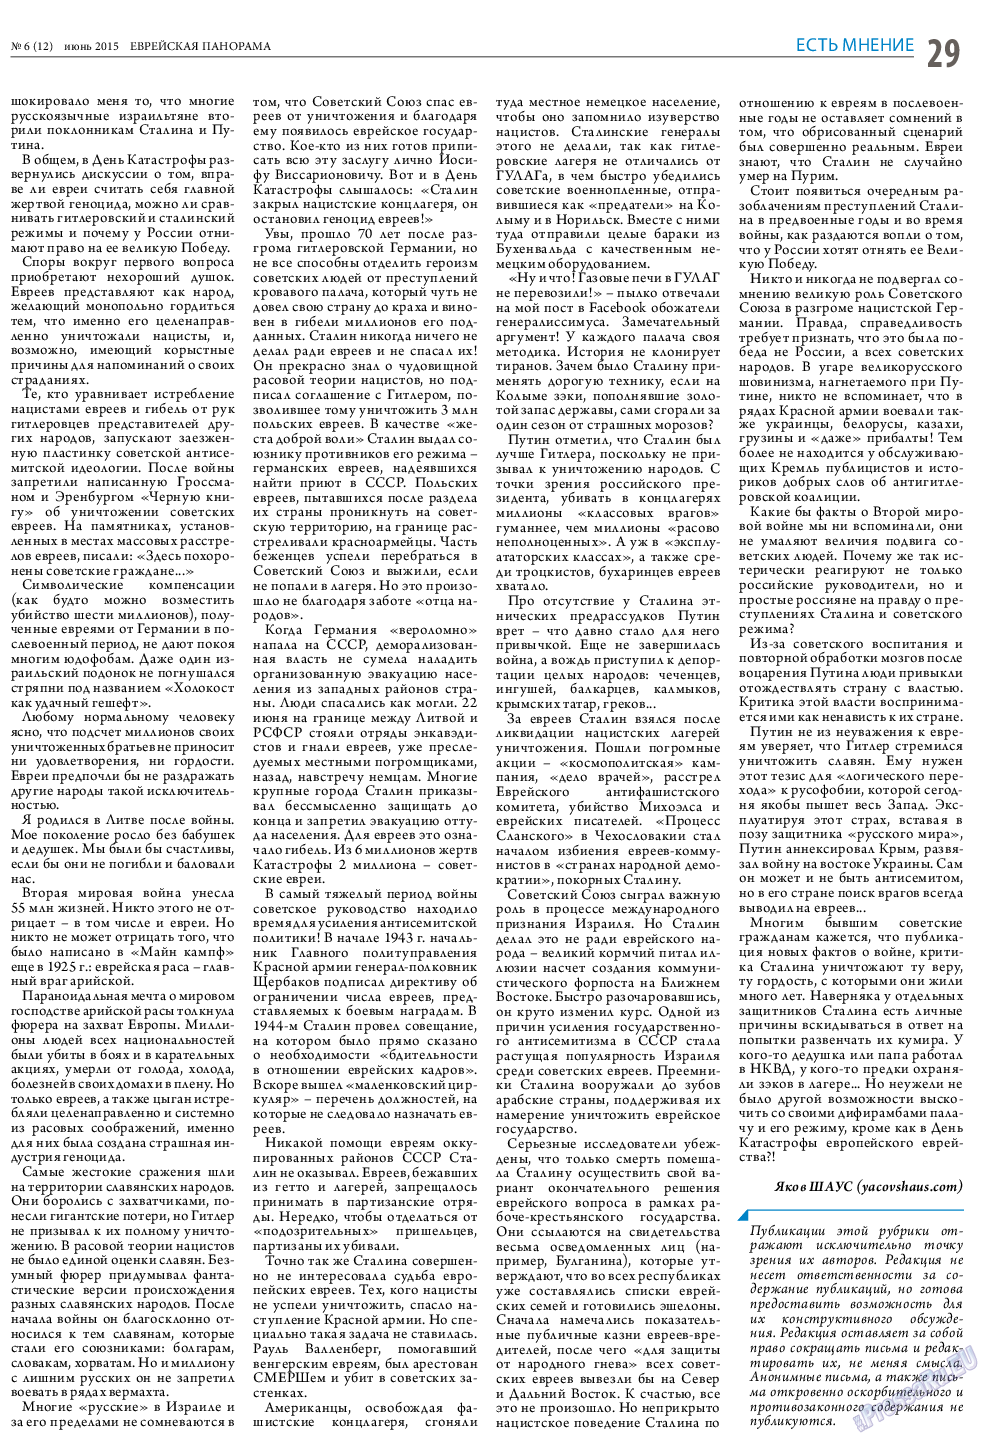 Еврейская панорама (газета). 2015 год, номер 6, стр. 29